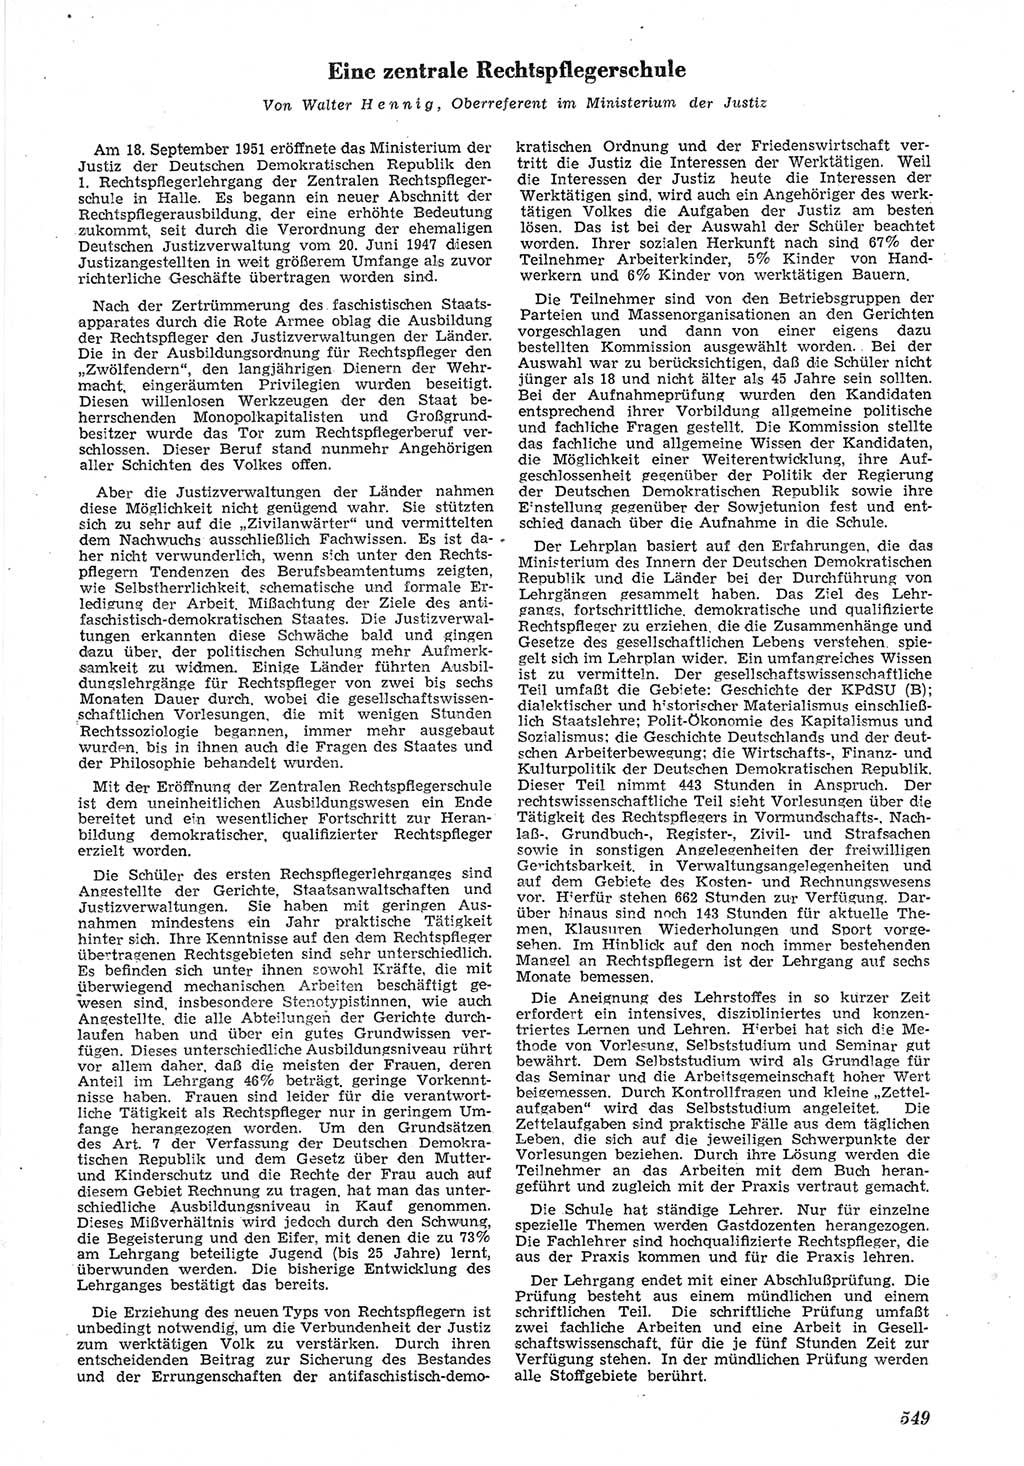 Neue Justiz (NJ), Zeitschrift für Recht und Rechtswissenschaft [Deutsche Demokratische Republik (DDR)], 5. Jahrgang 1951, Seite 549 (NJ DDR 1951, S. 549)